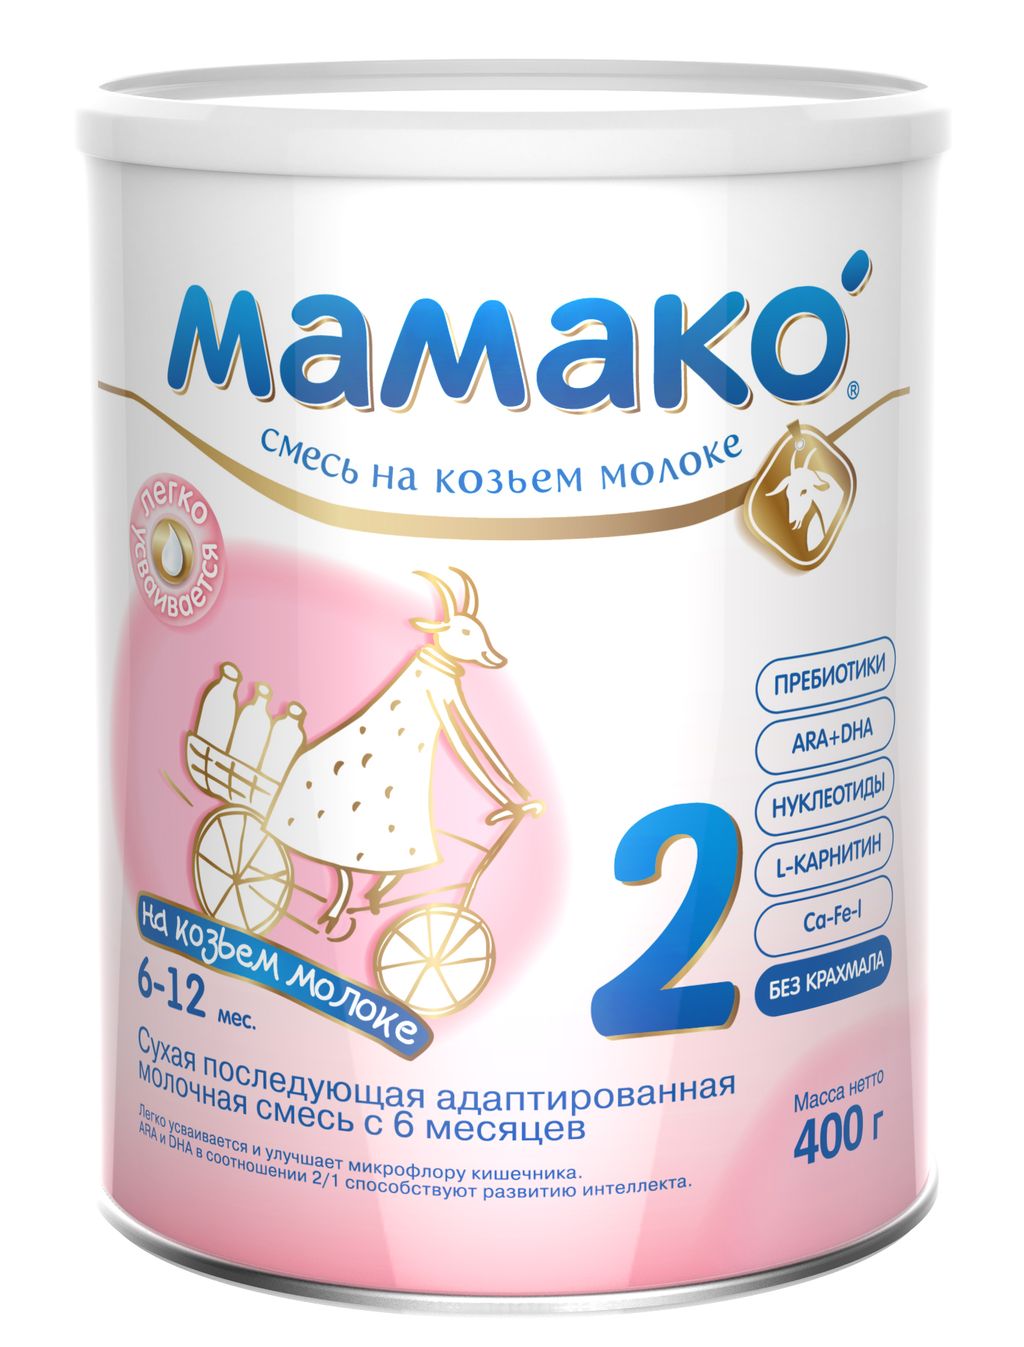 фото упаковки Мамако 2 Premium молочная смесь на основе козьего молока